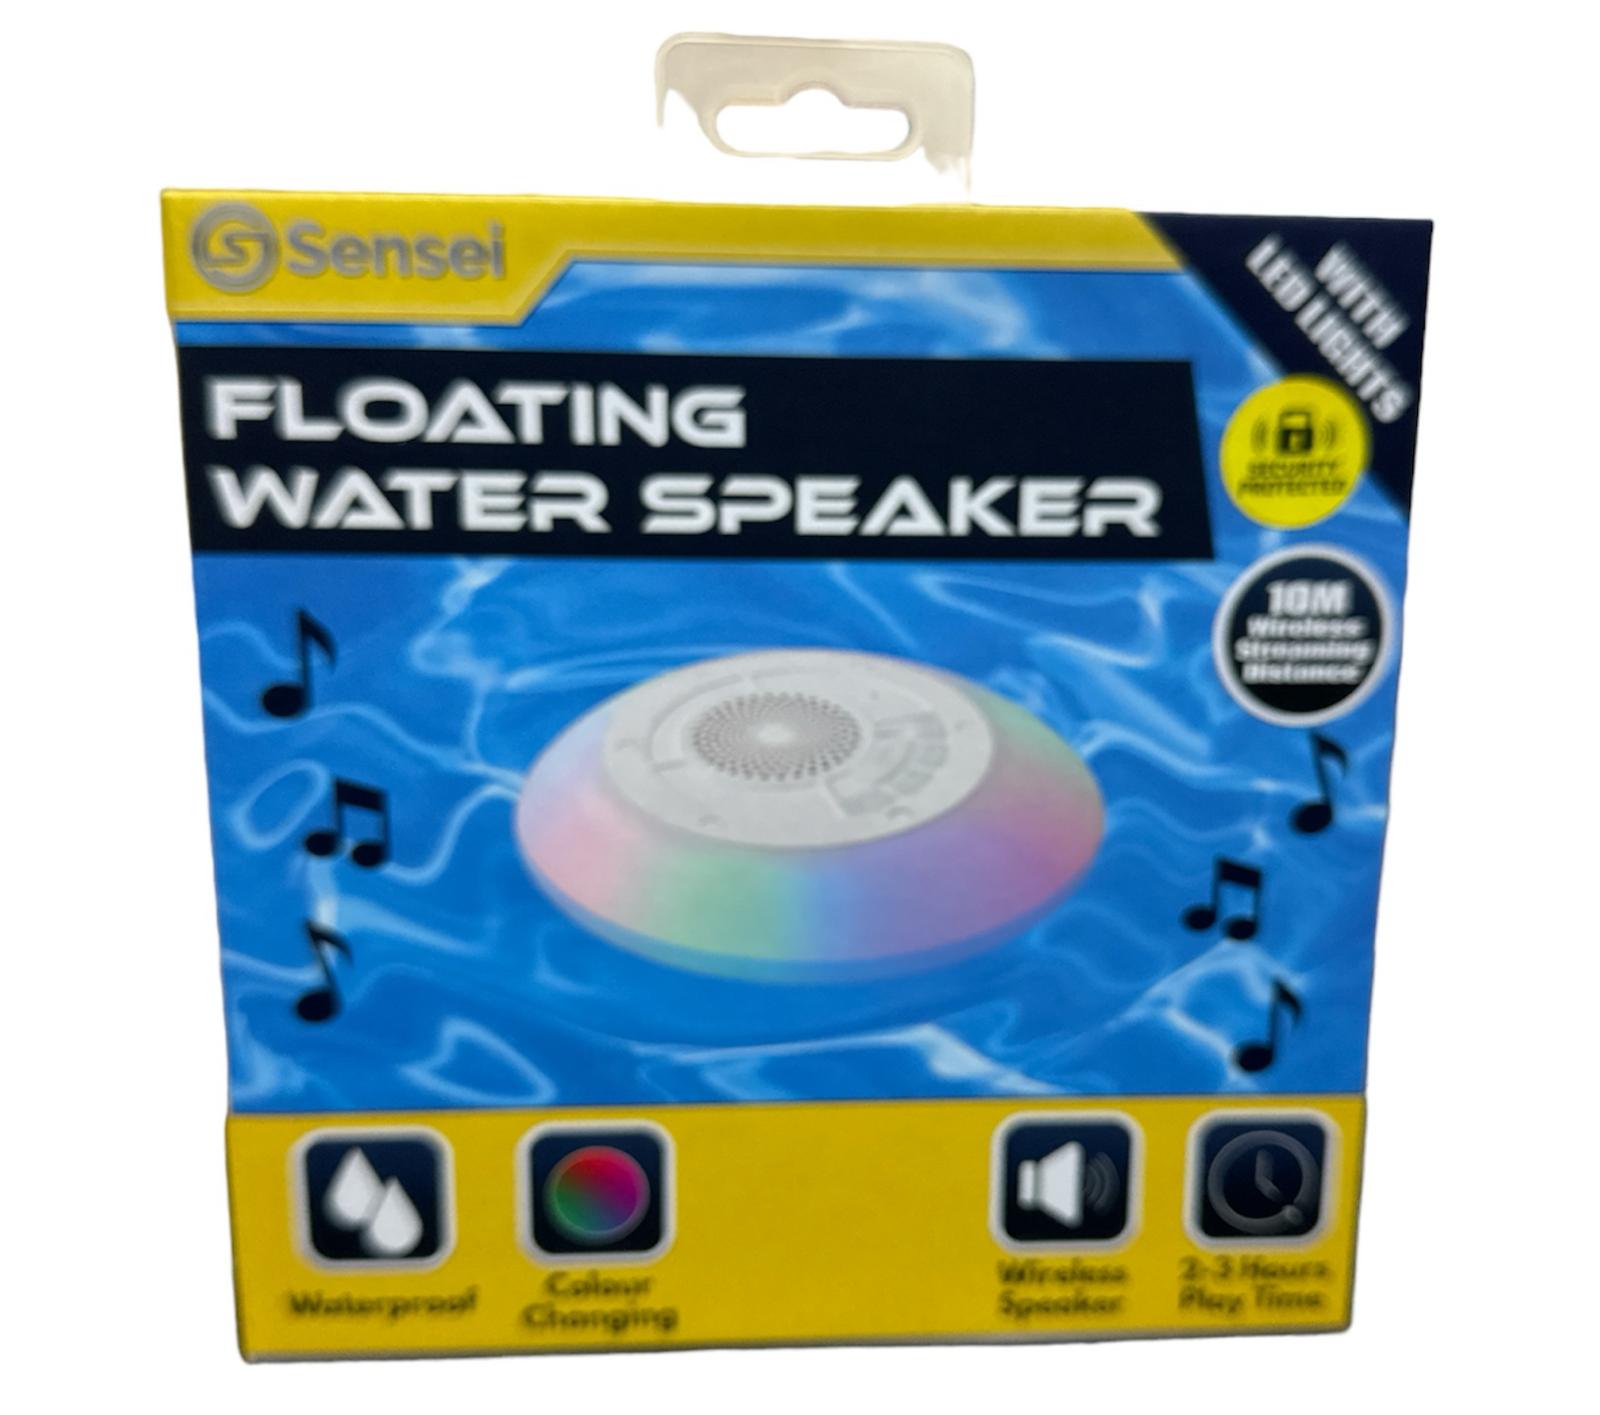 Sensei Floating Water Speaker Brand New